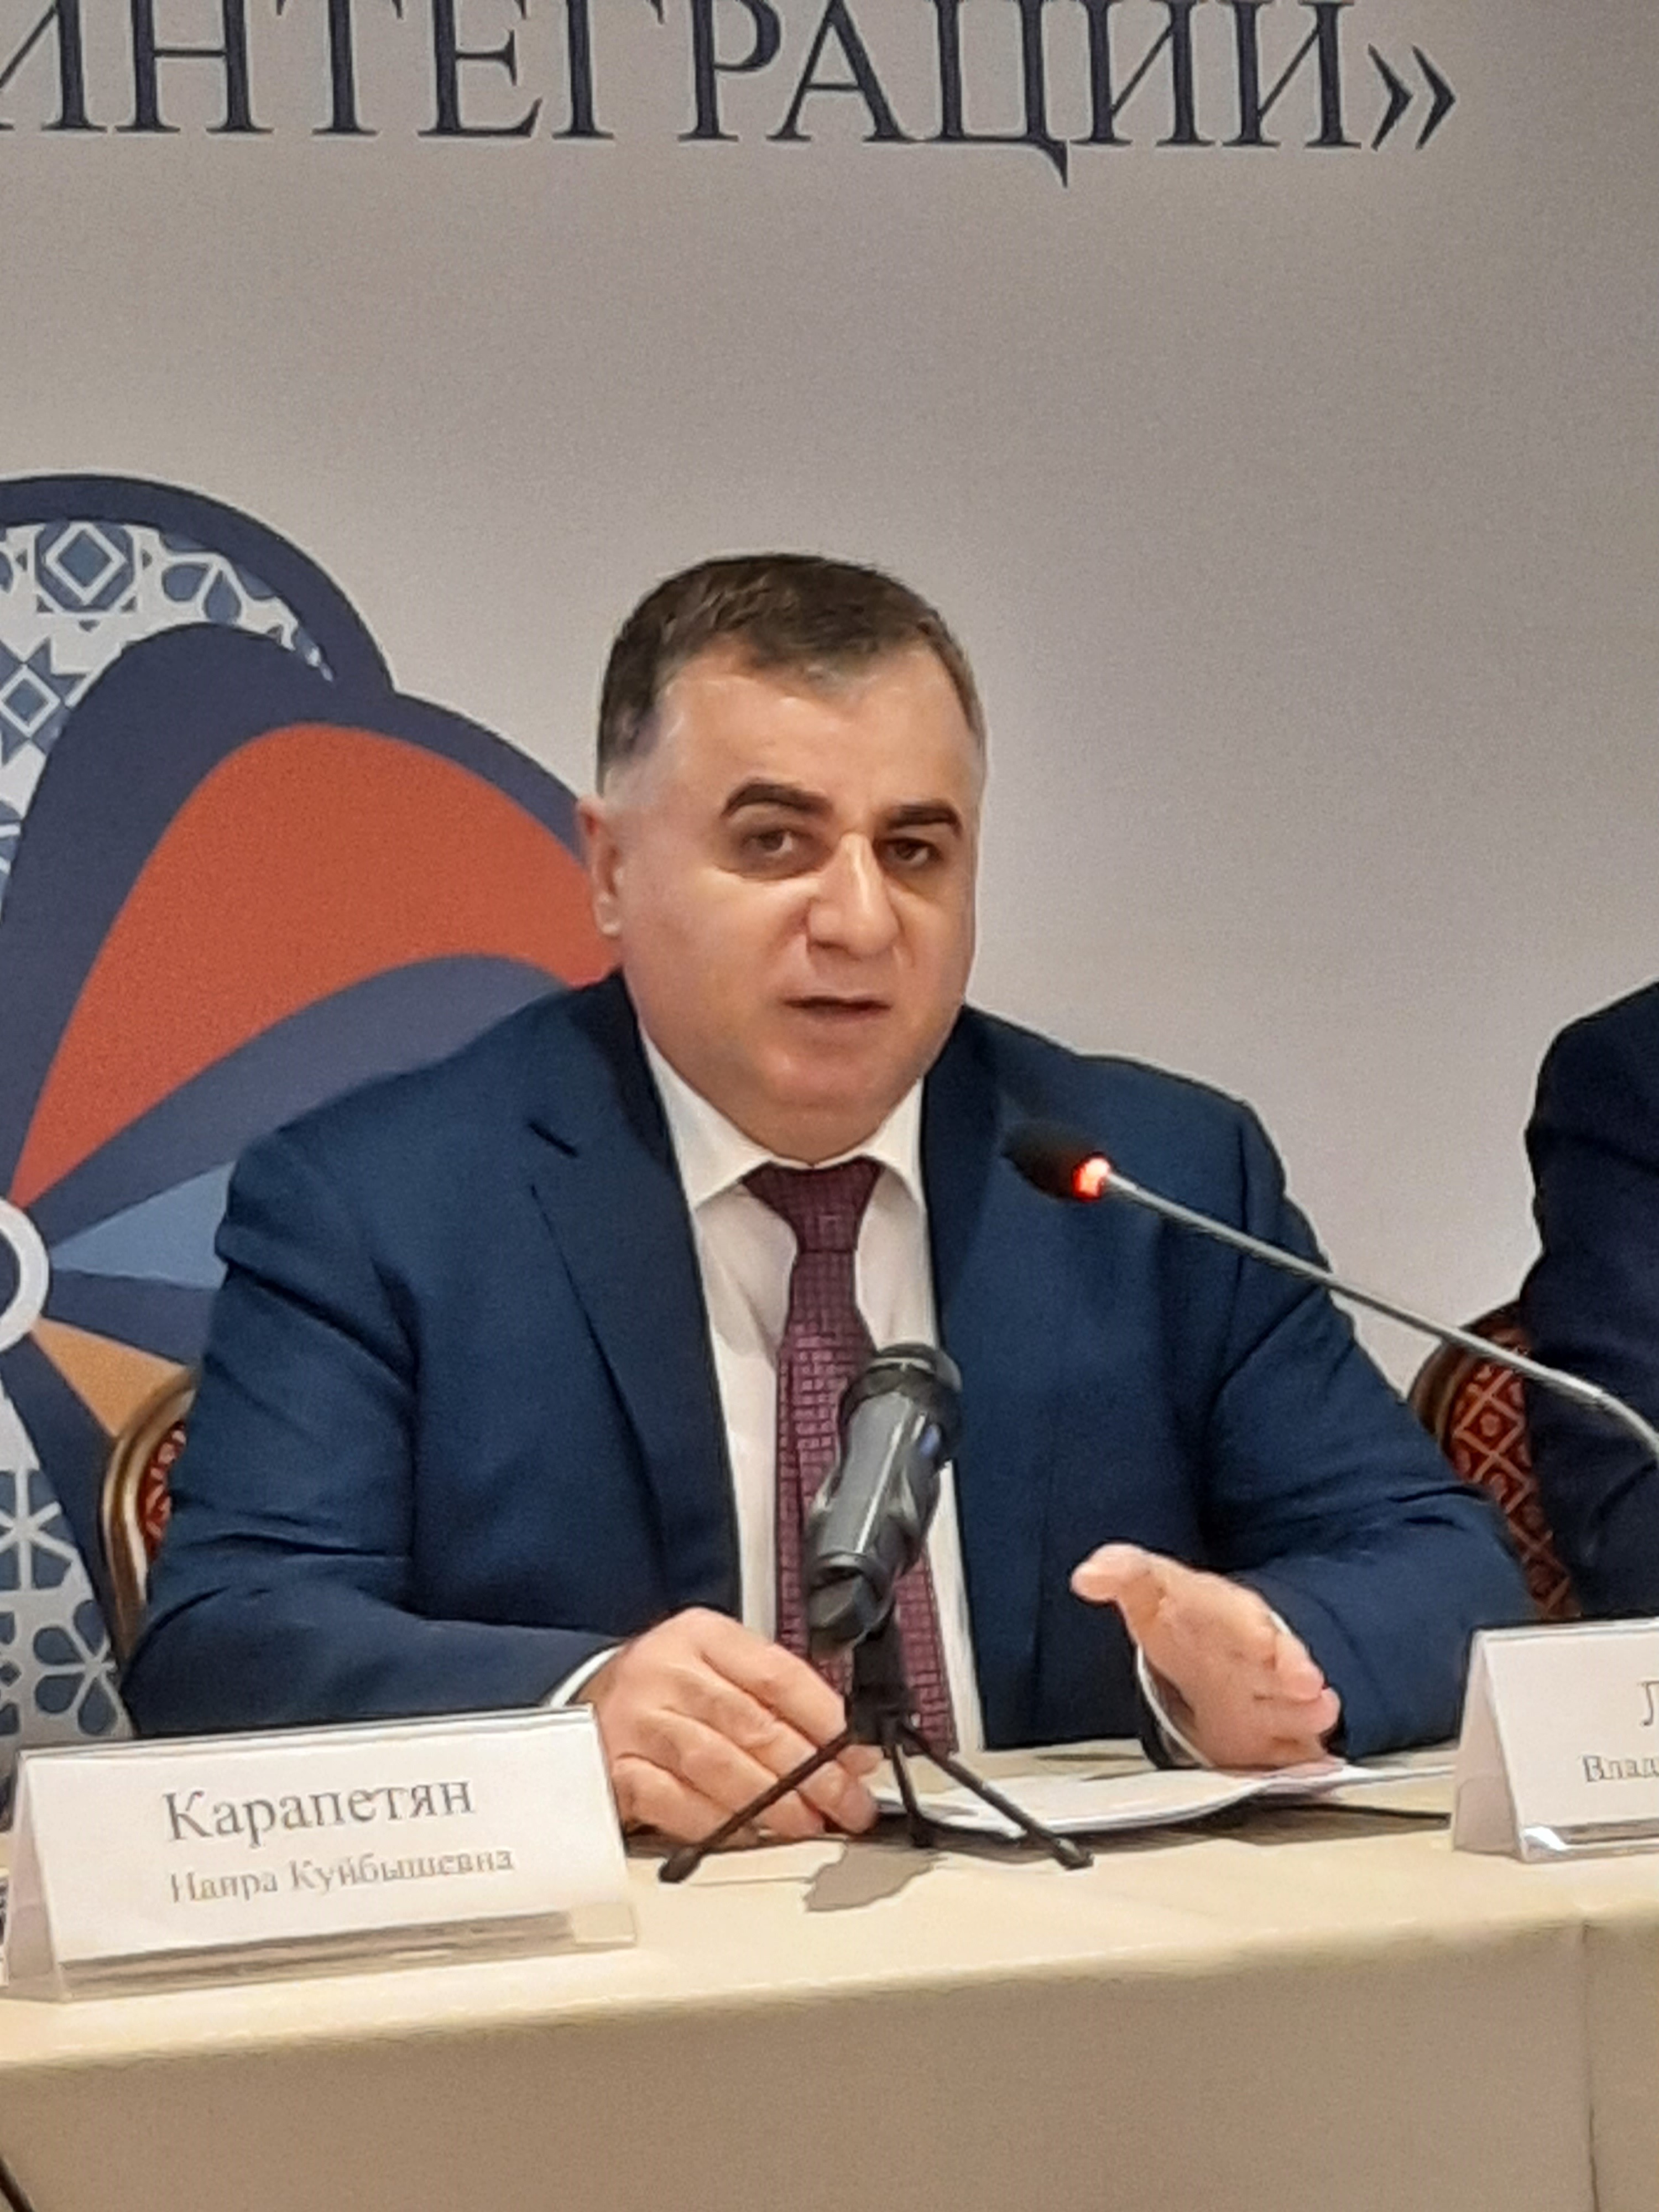 Председатель организации ДИАЛОГ: Российская армянская диаспора значимый фактор, способный помочь развитию межгосударственных отношений и экономического партнерства 